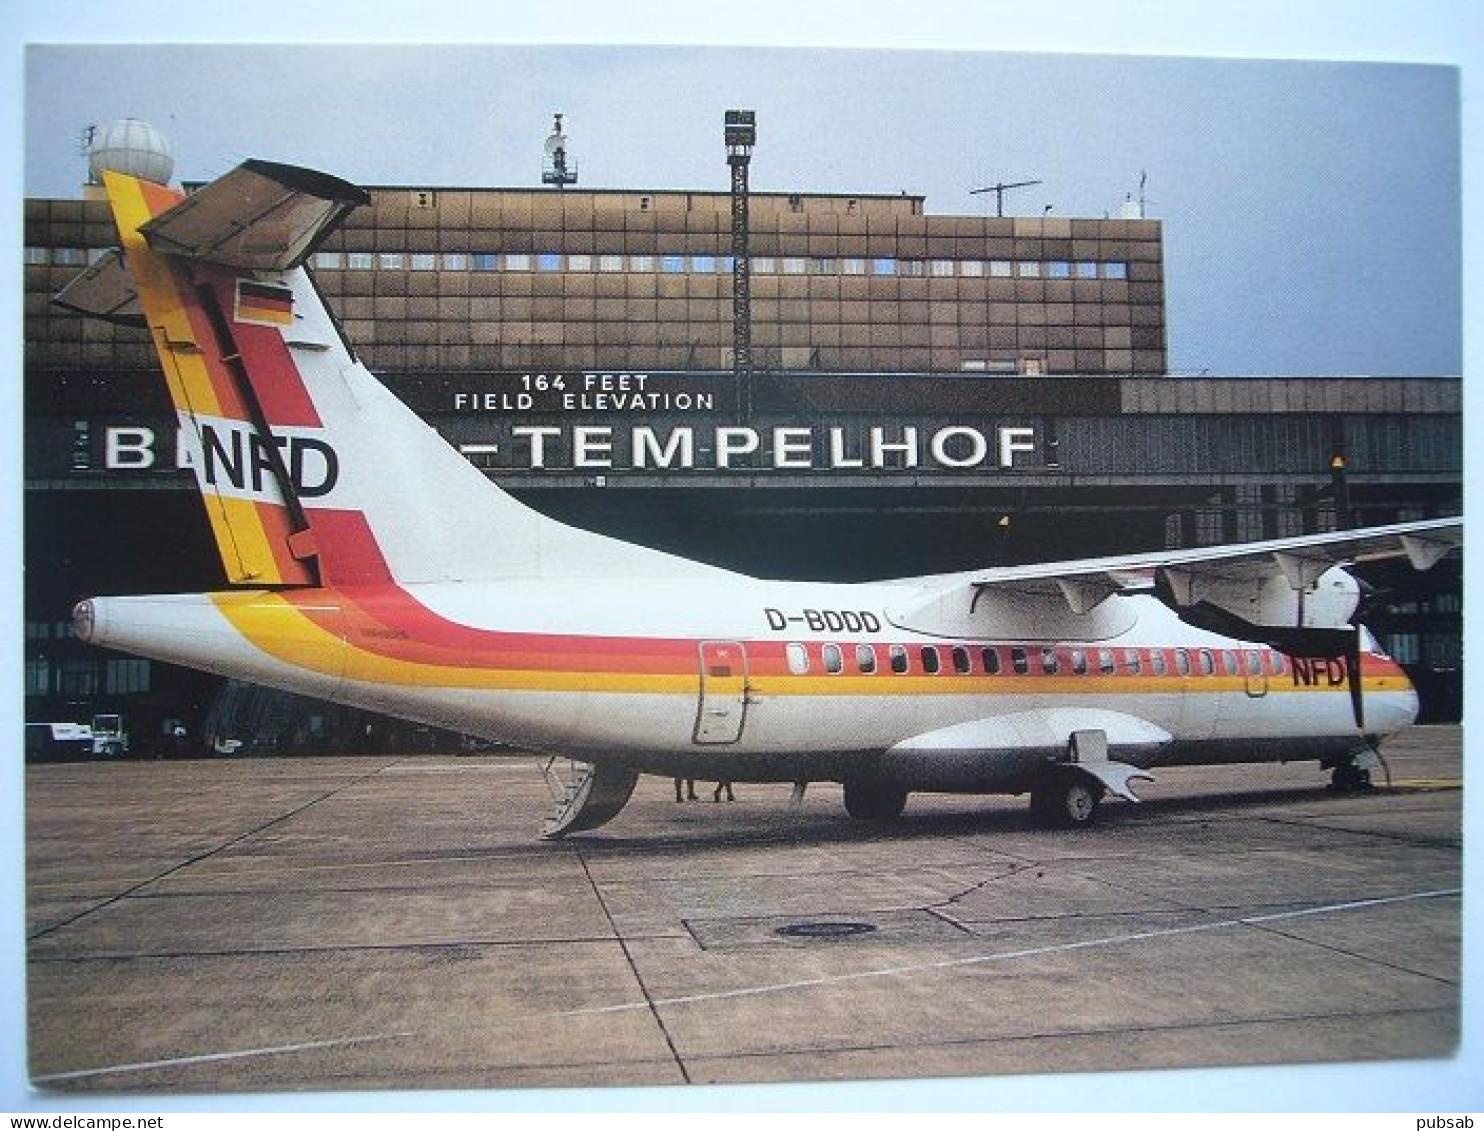 Avion / Airplane / NFD - LUFTVERKEHS AG / ATR 72 / Airline Issue / Seen At Berlin Tempelhof Airport - 1946-....: Moderne